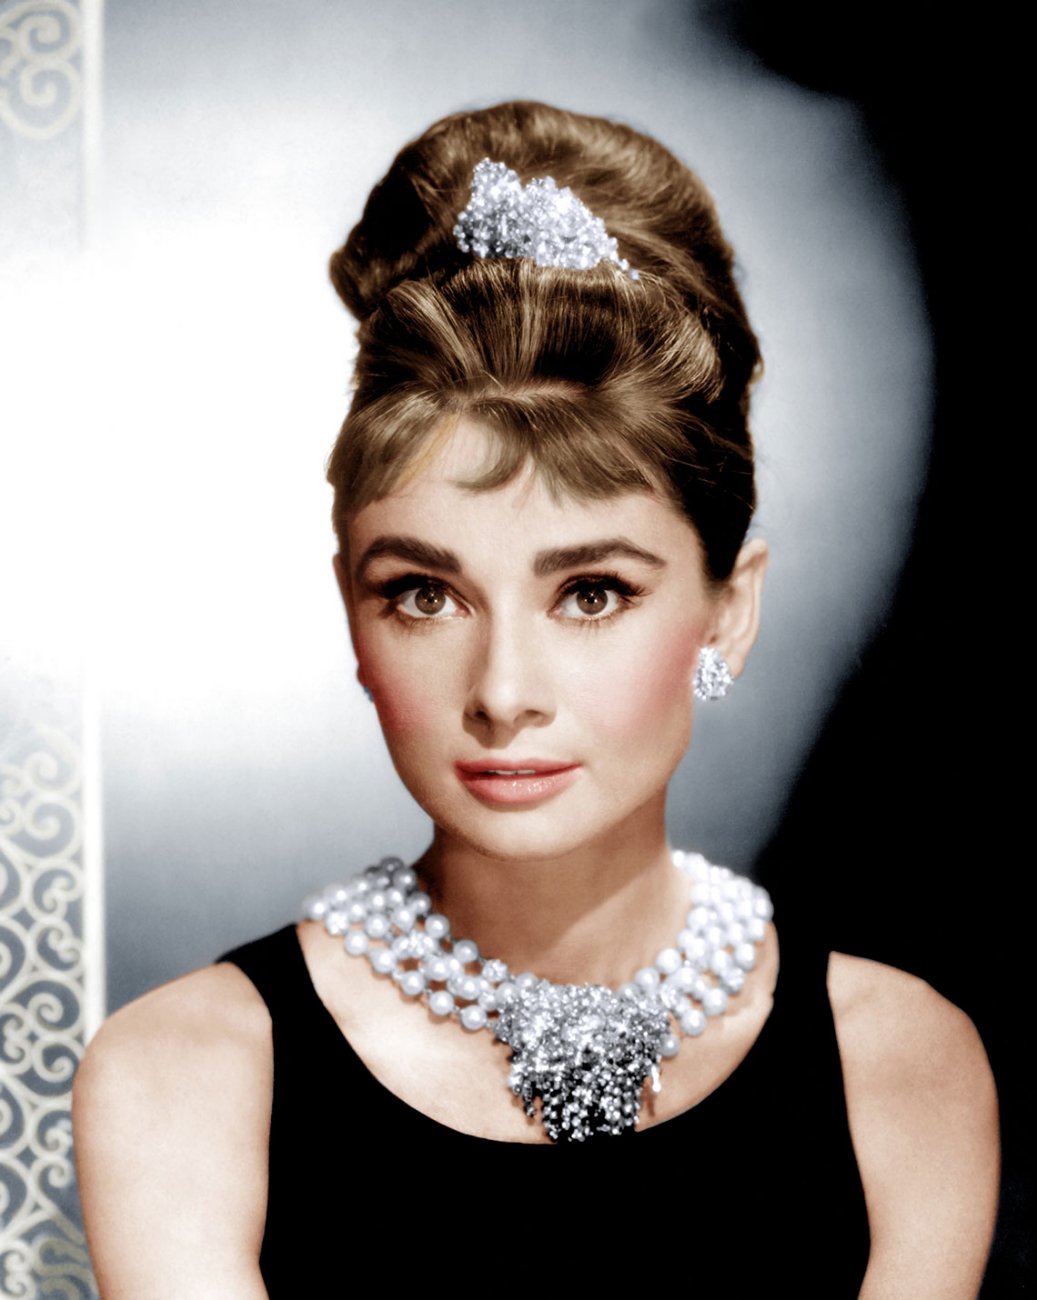 sonriendo A veces Acorazado Fotos de los looks y vestuarios famosos de Audrey Hepburn